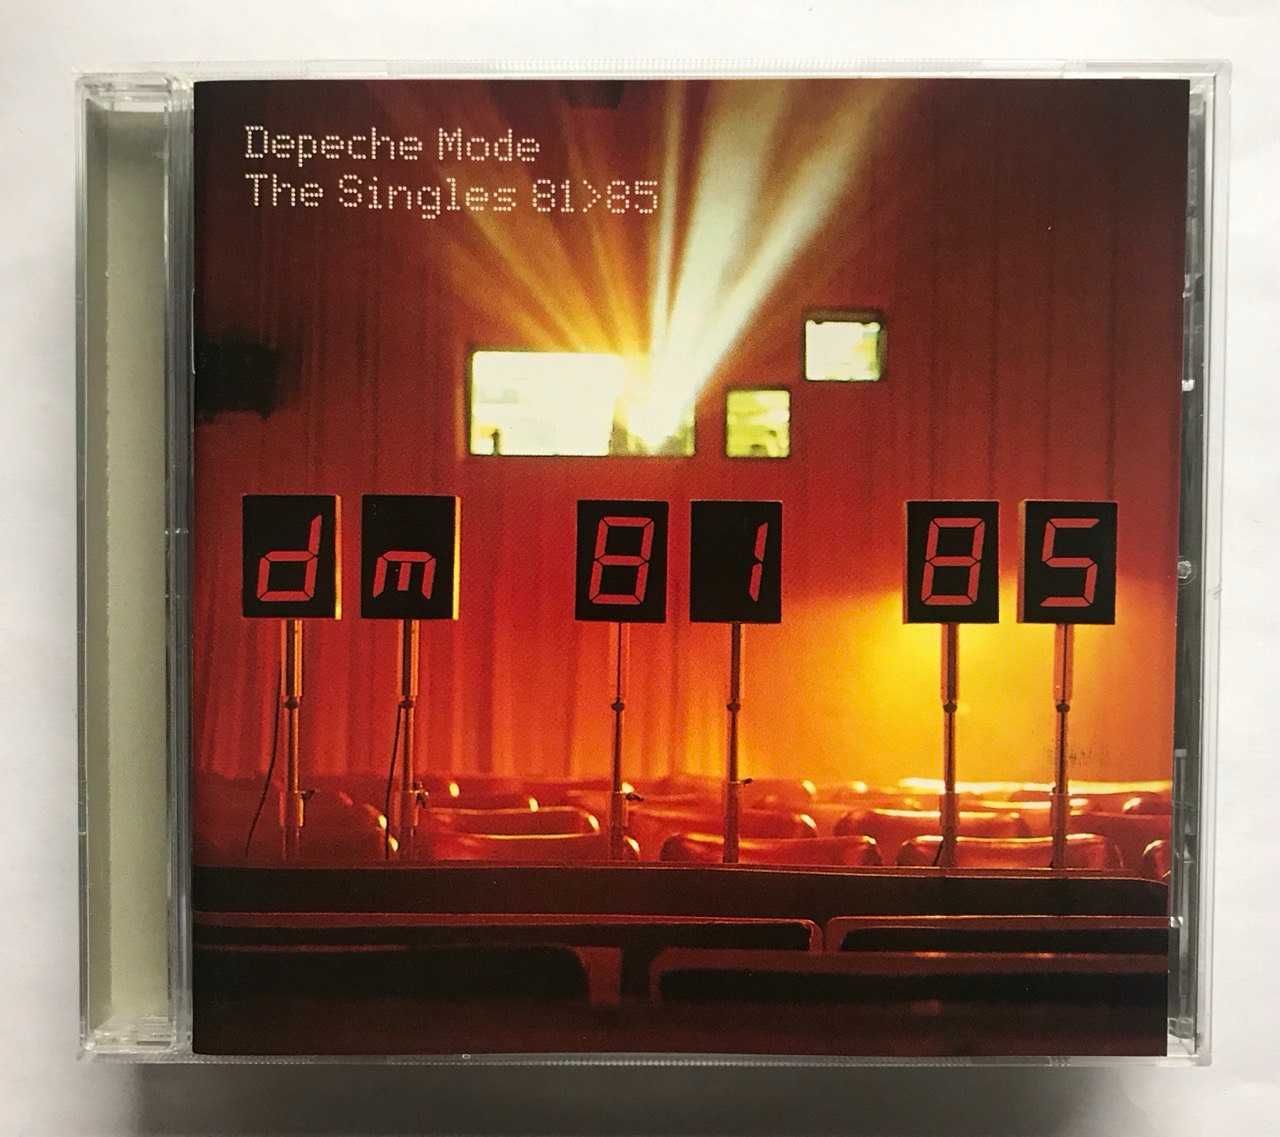 Depeche Mode – The Singles 81-85 (1998, U.S.A.)